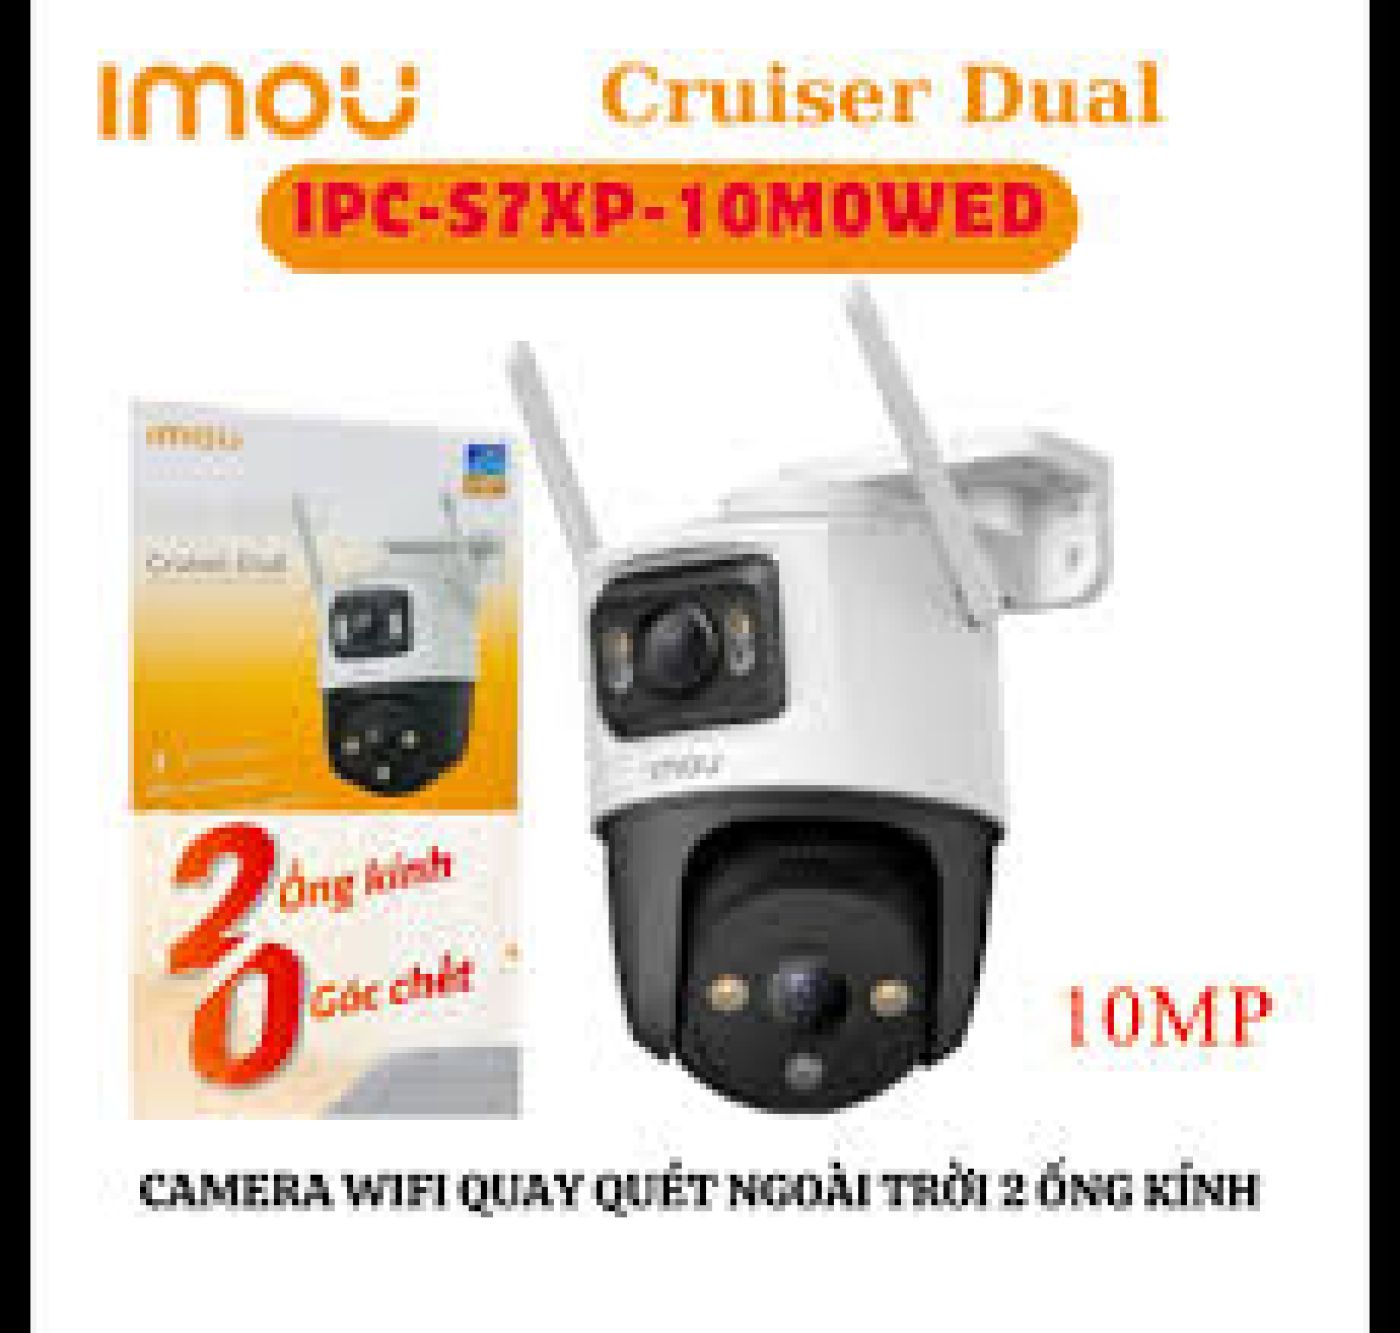 Combo Camera ngoài trời 2 mắt IMOU Cruiser Dual 10MP - S7XP-10M0WED + Thẻ nhớ 64G